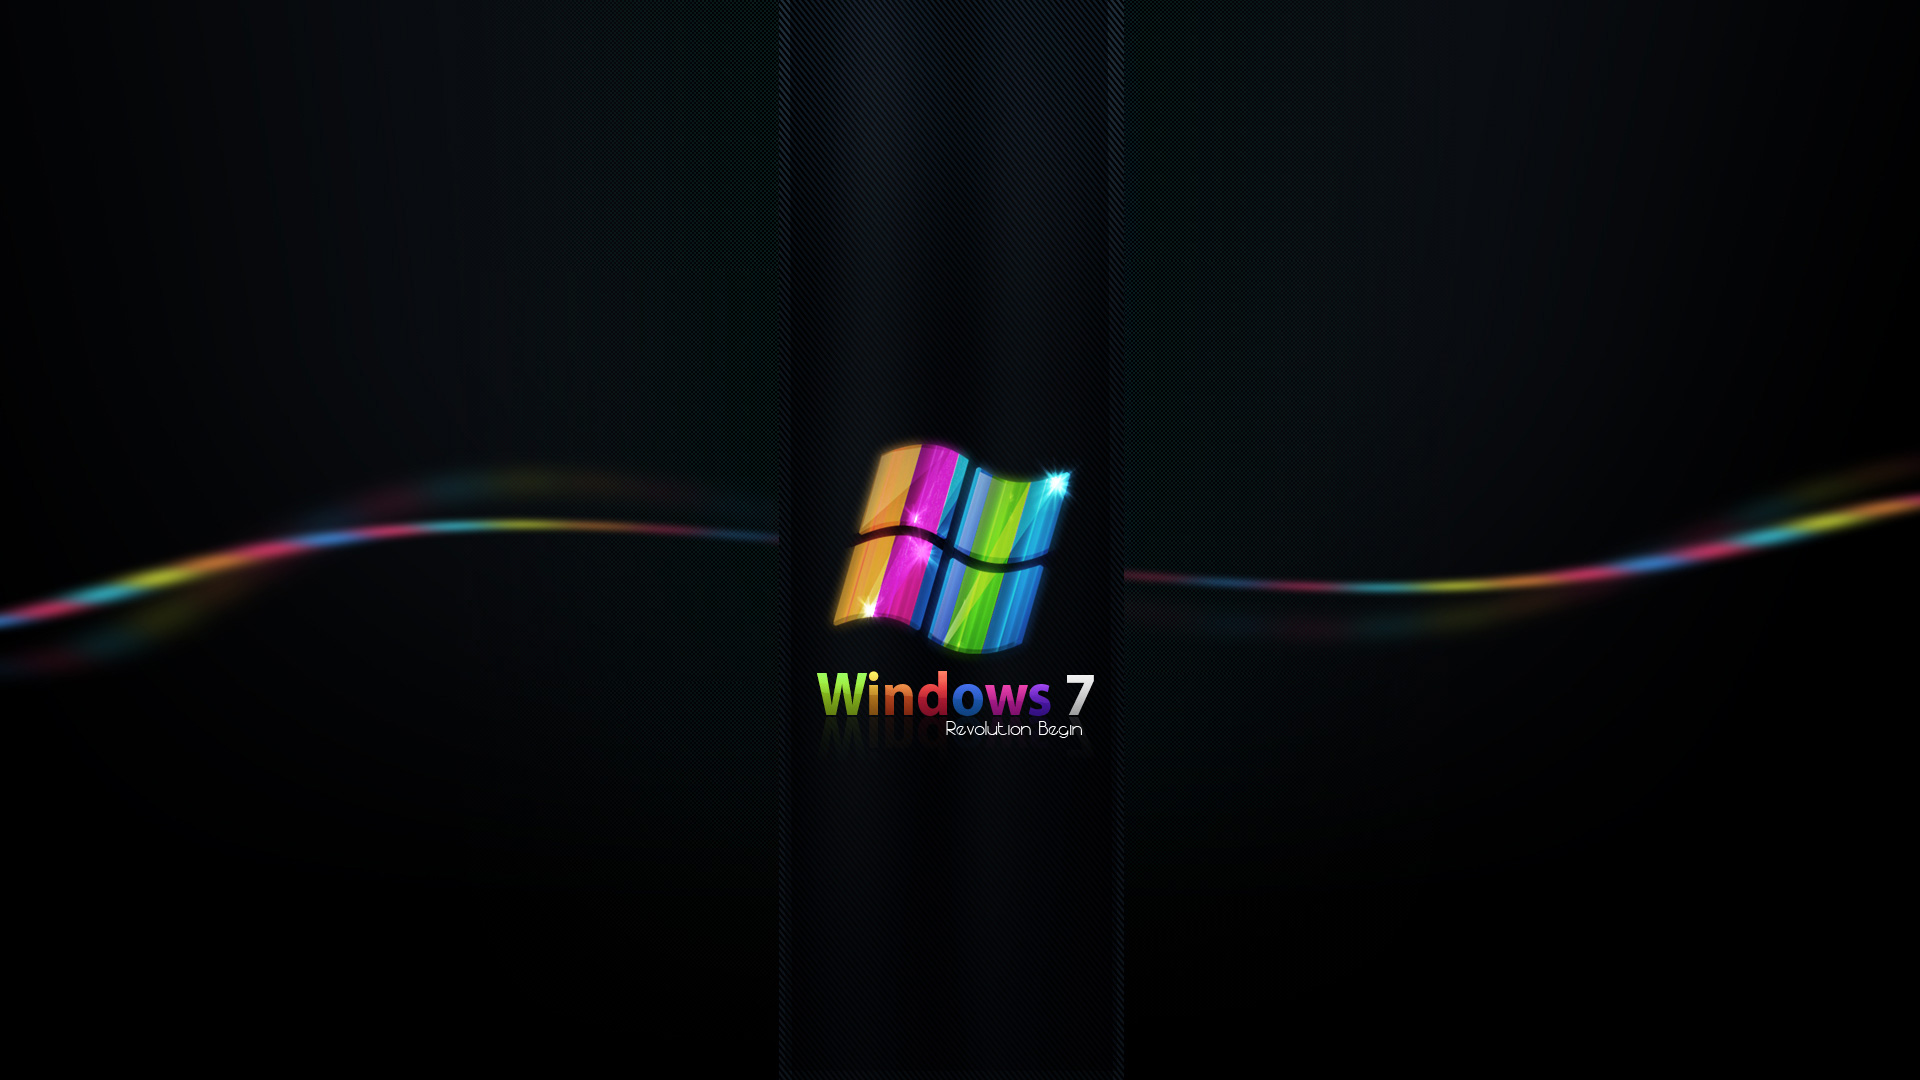 Máy tính của bạn sẽ trở nên sinh động và đầy sắc màu với những hình nền Windows 7 đa màu sắc. Hãy tìm kiếm một bộ sưu tập hình nền đa màu sắc Windows 7 để cập nhật trên máy tính của bạn và mang đến cho mình những trải nghiệm tuyệt vời.